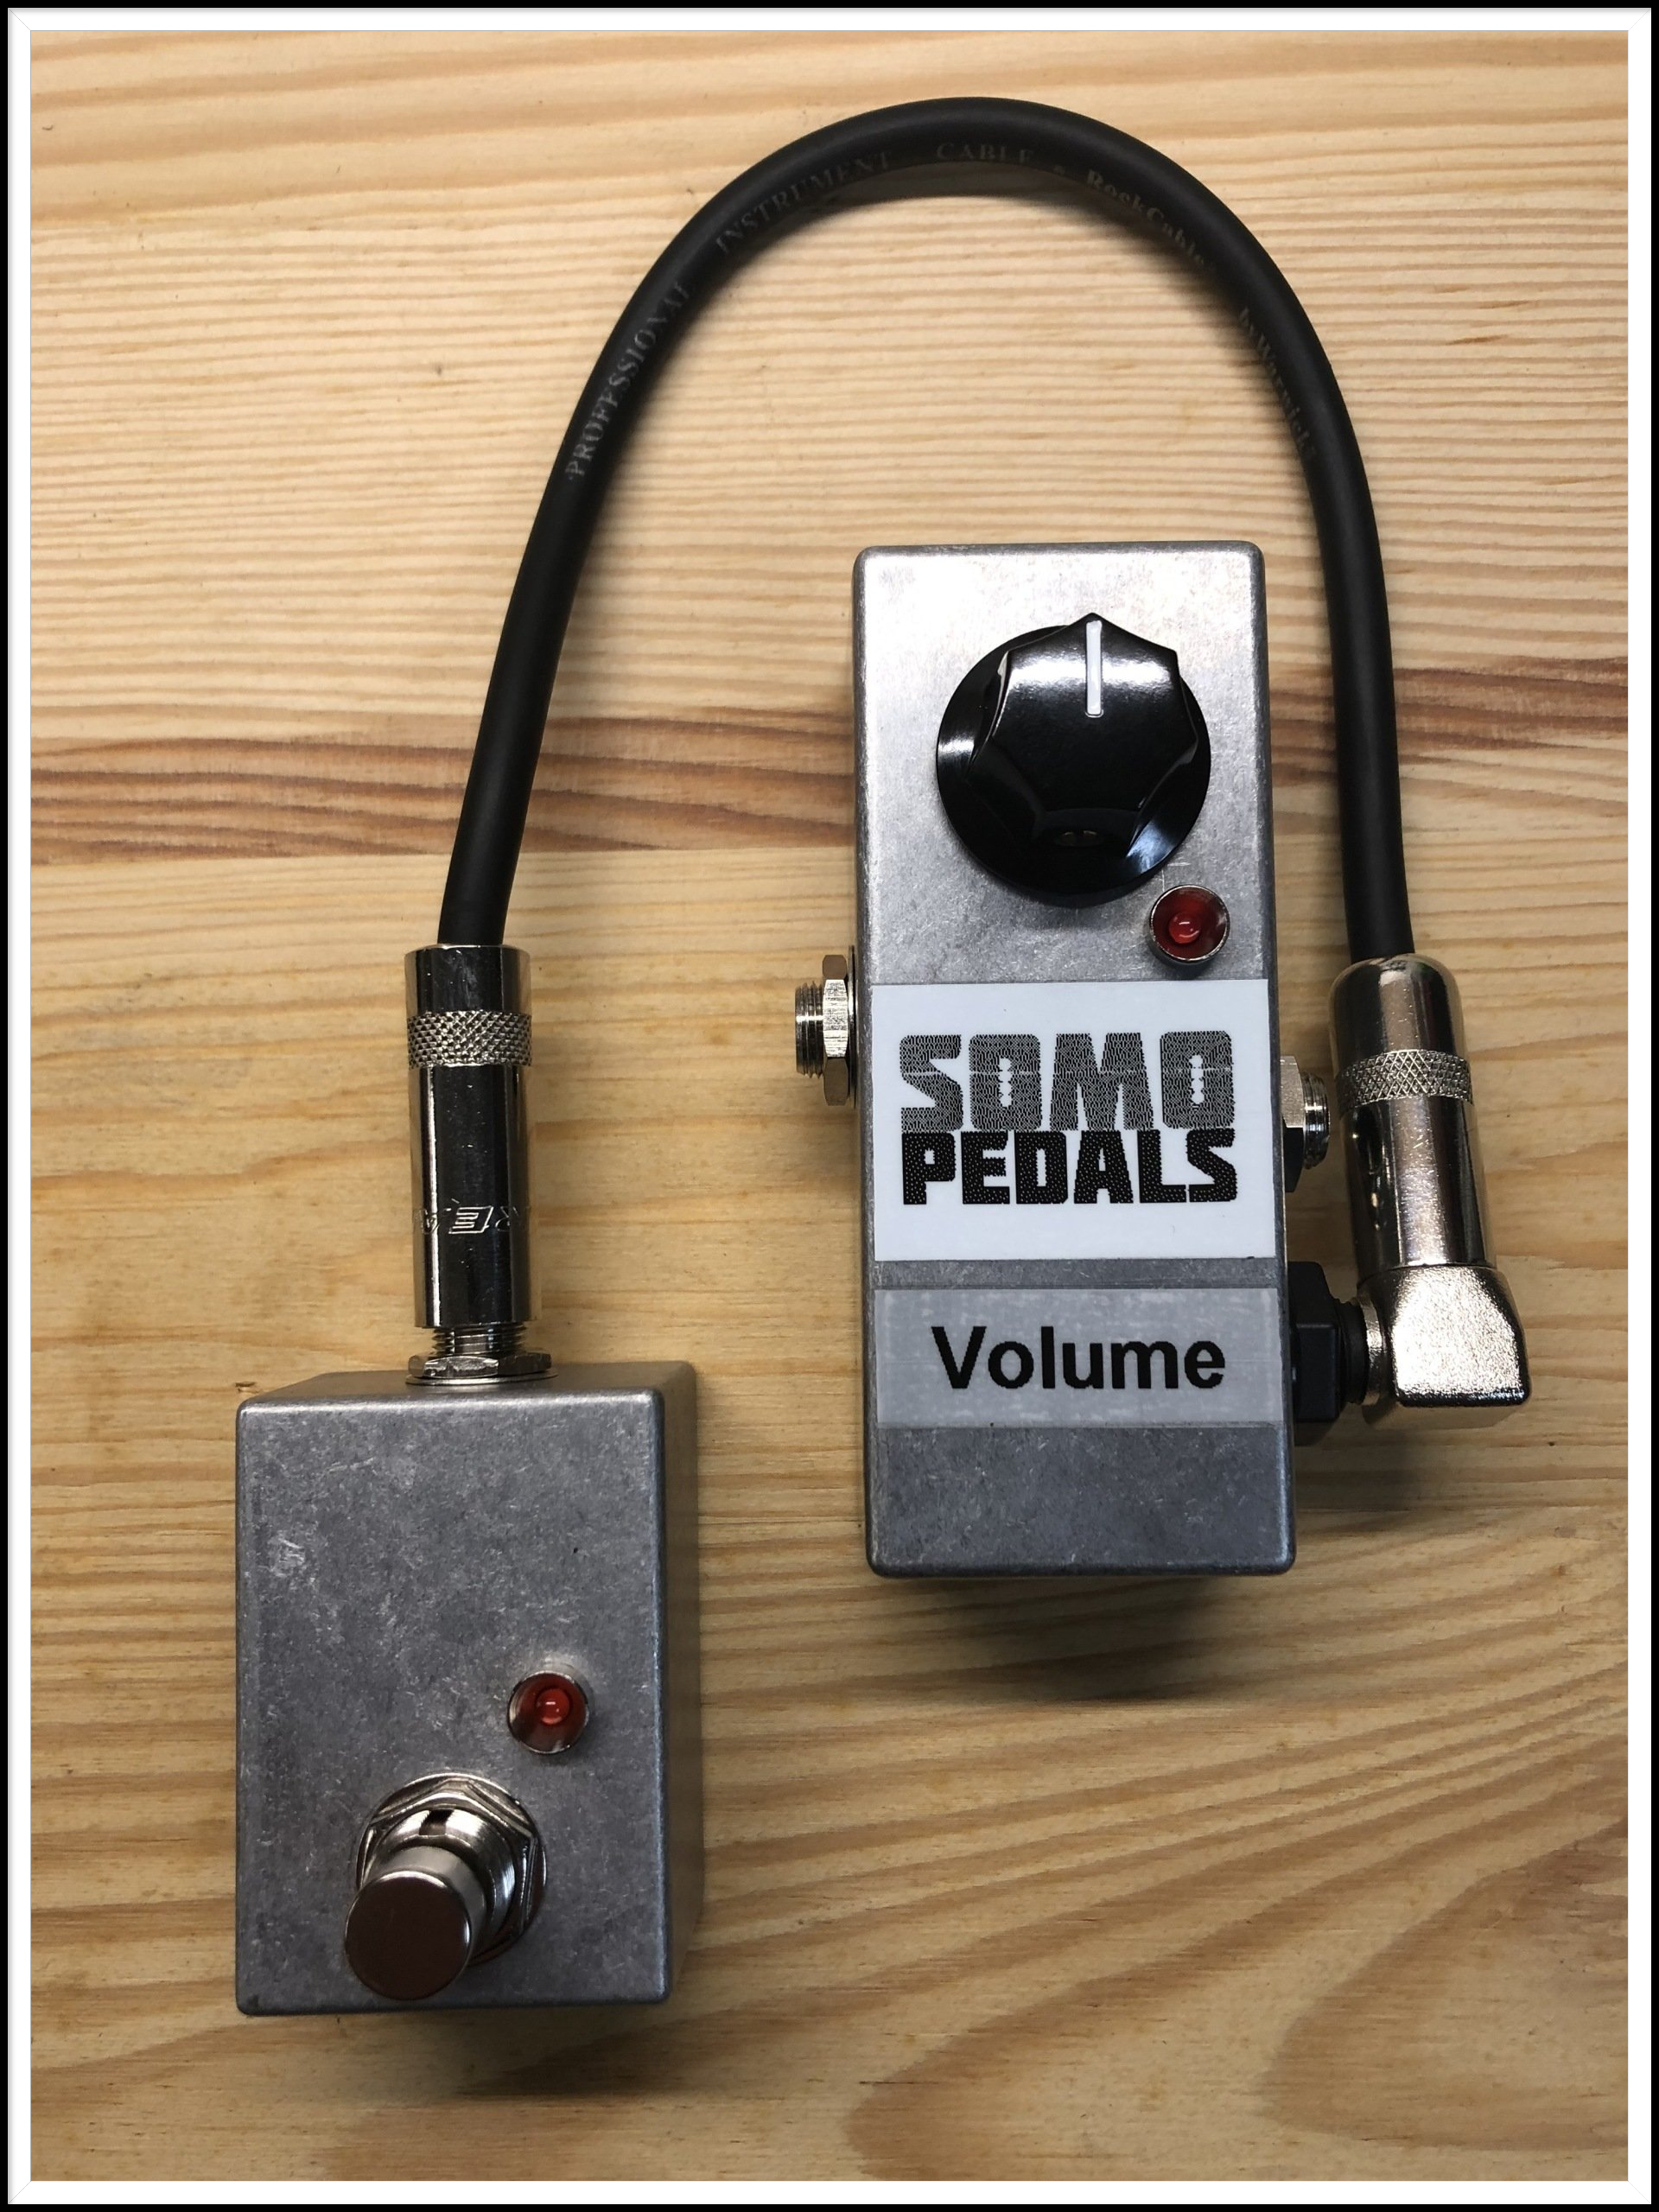 Remote Volume